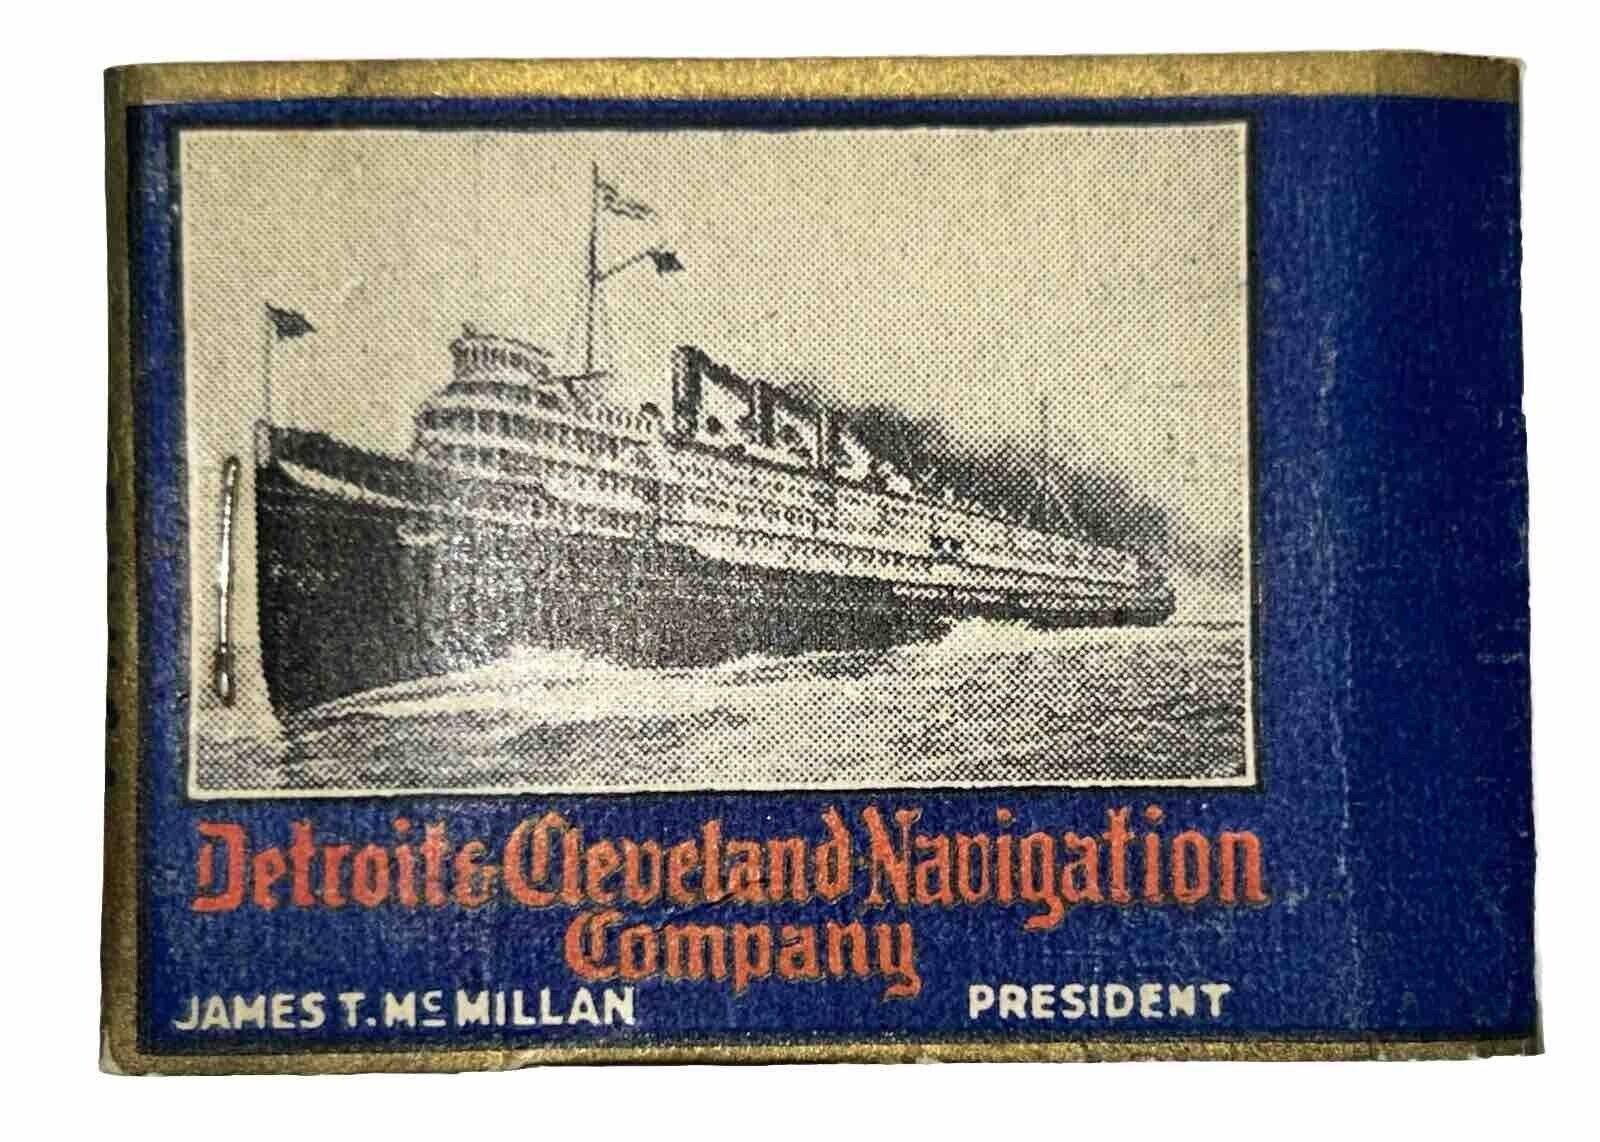 Rare Detroit Cleveland Navigation Co Steamer Line Ship Line D&C Matchbook 1930's